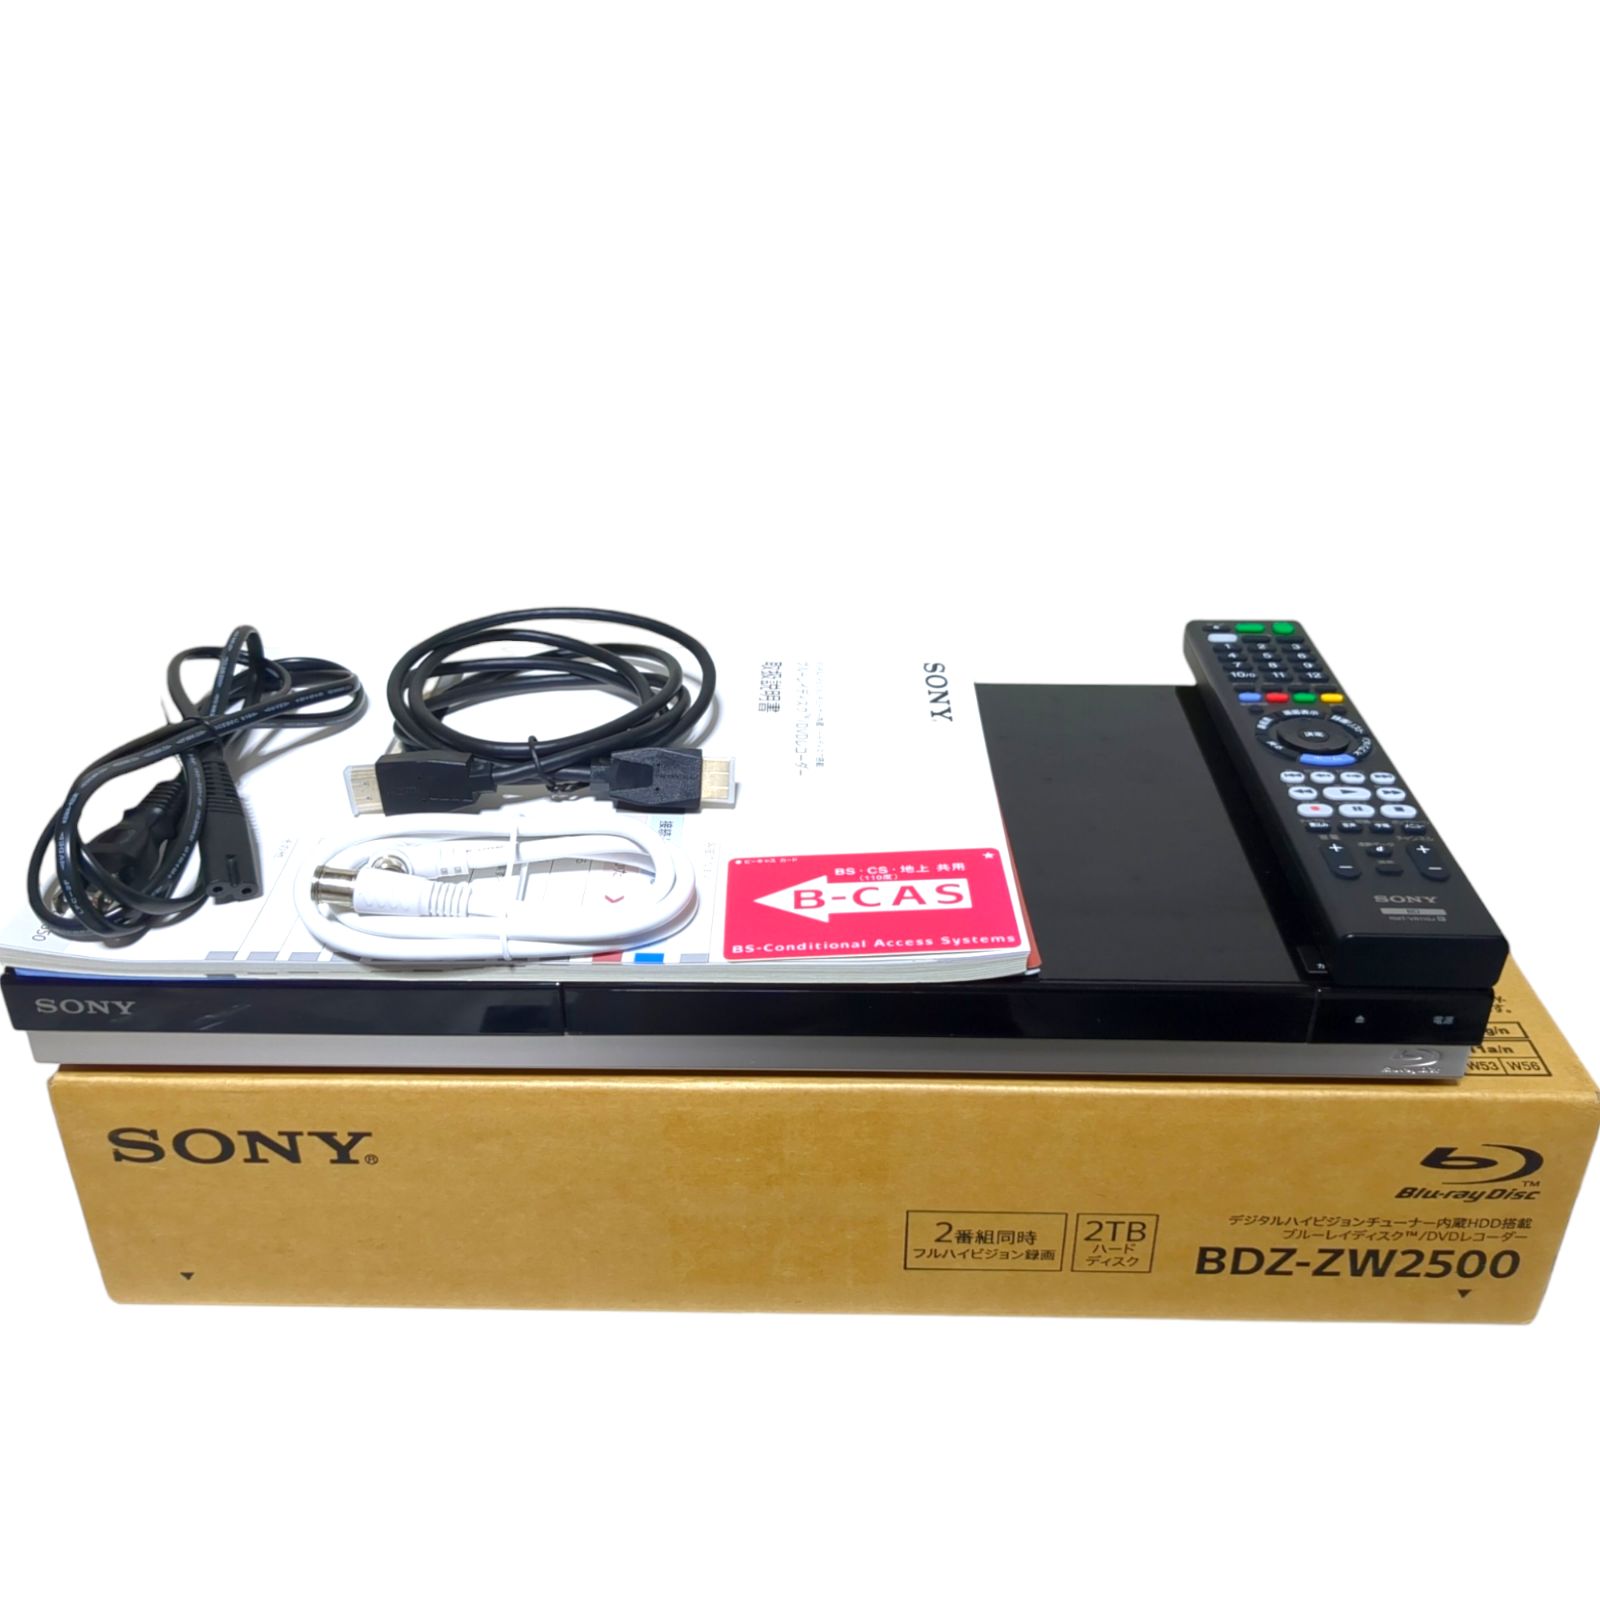 ソニー ブルーレイ DVD レコーダーBDZ-ZW1500 - ブルーレイレコーダー